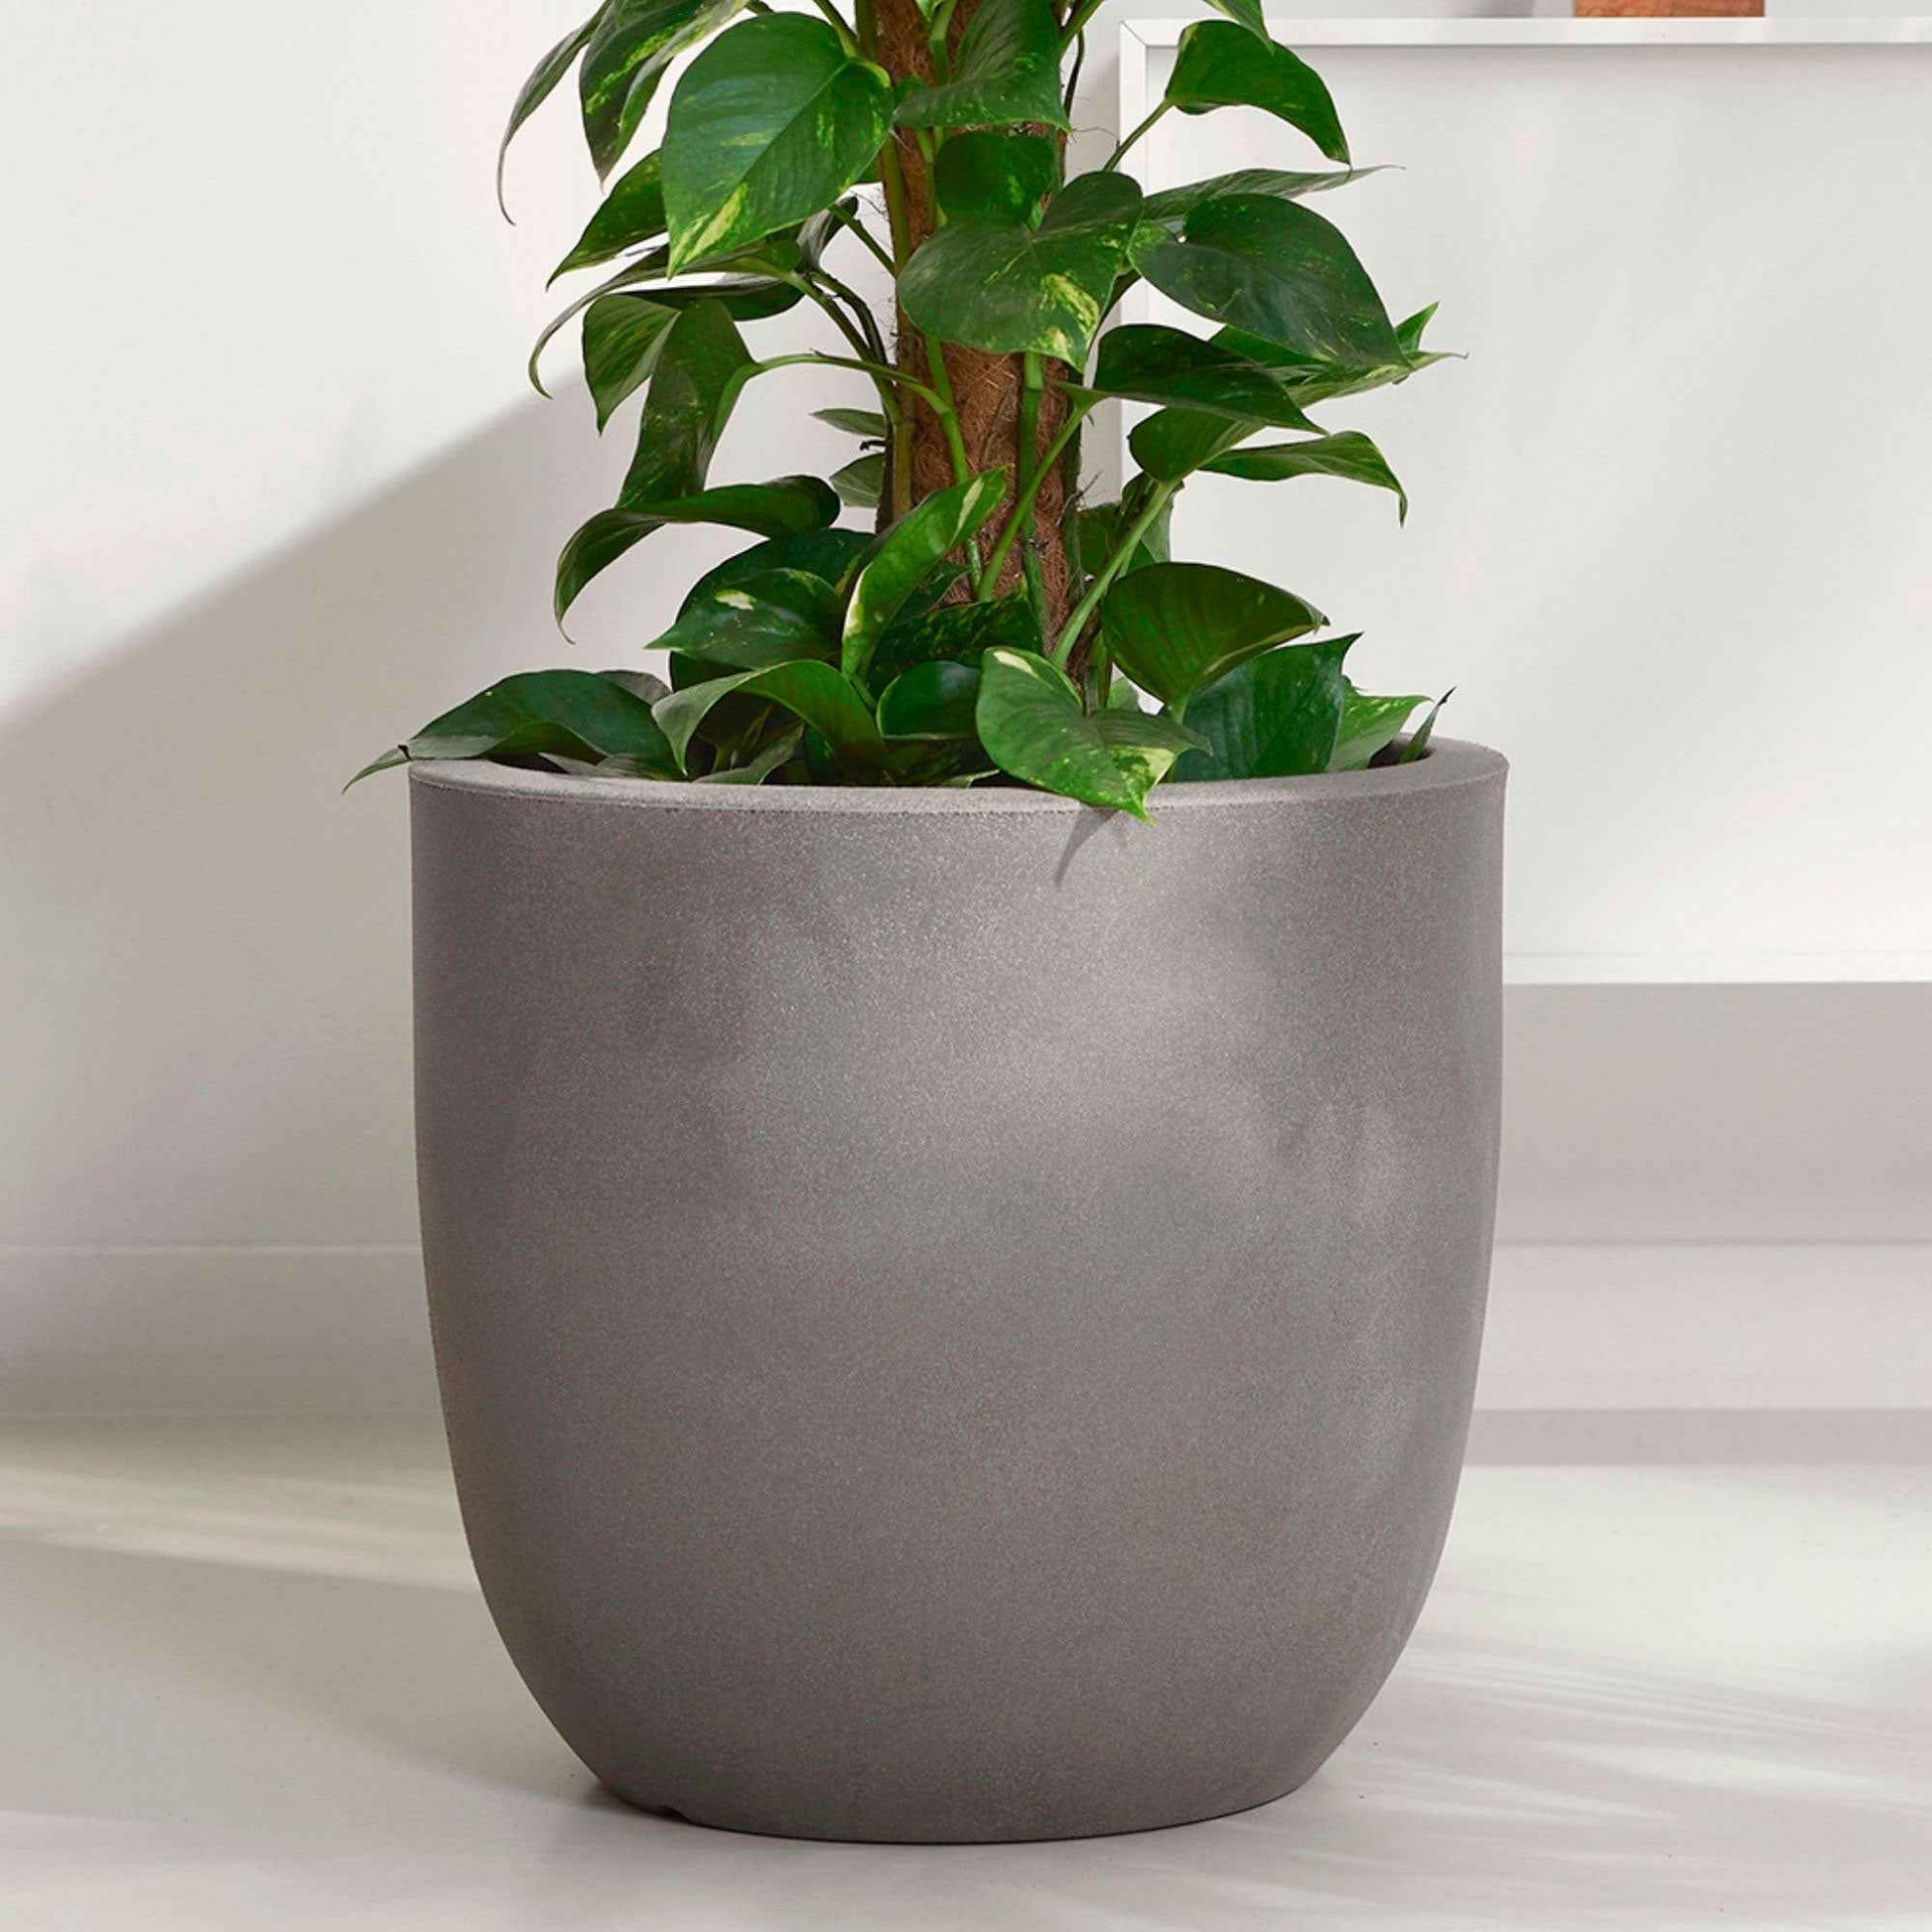 Capi Urban smooth pot de fleurs rond anthracite - Pot pour l'intérieur et l'extérieur - Capi